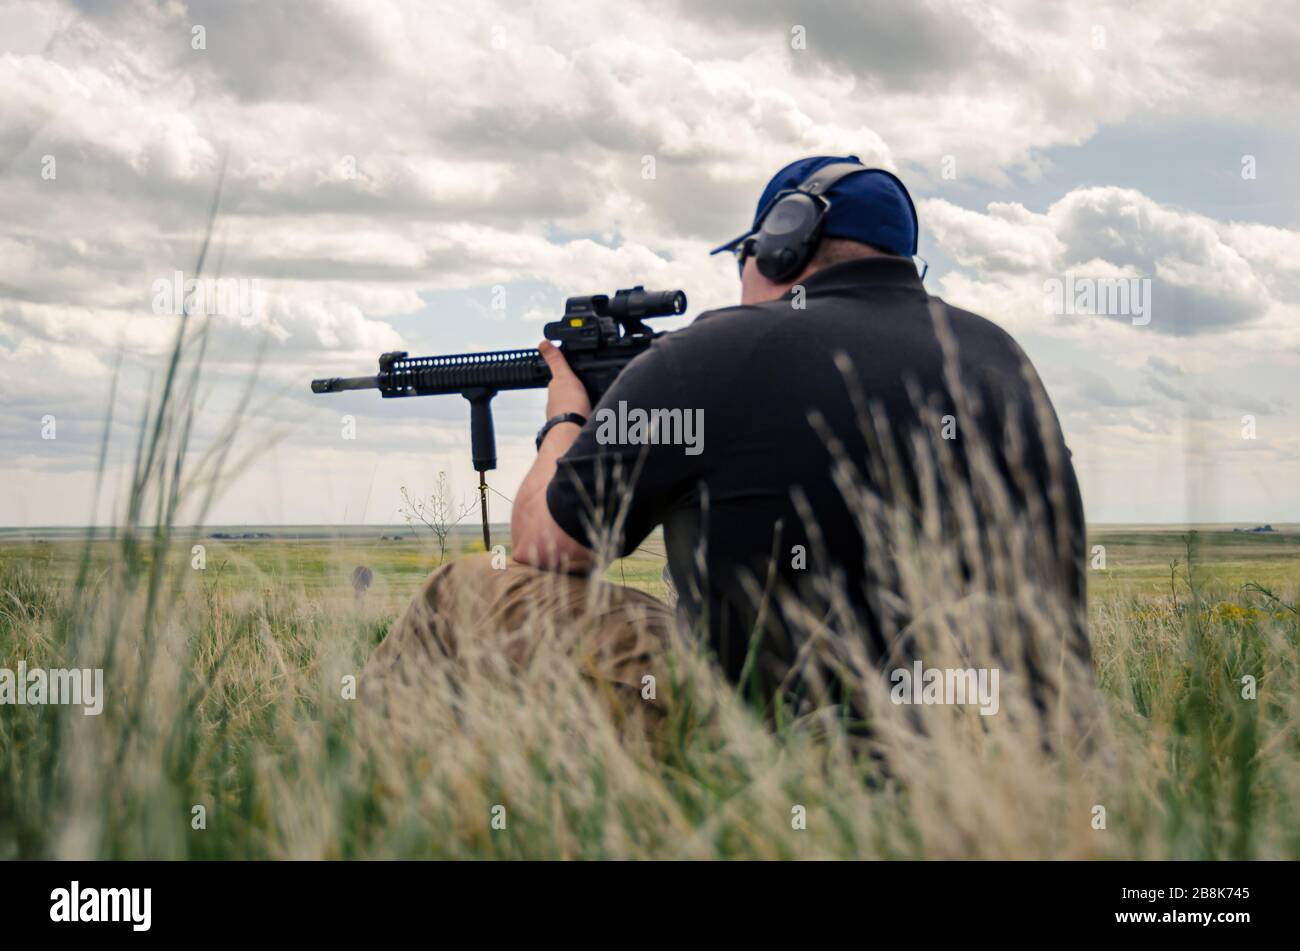 Hombre sentado disparando rifle automático.armas de entrenamiento y fuego en vivo en la gama de armas abiertas, la cultura estadounidense Fort Collins USA Foto de stock